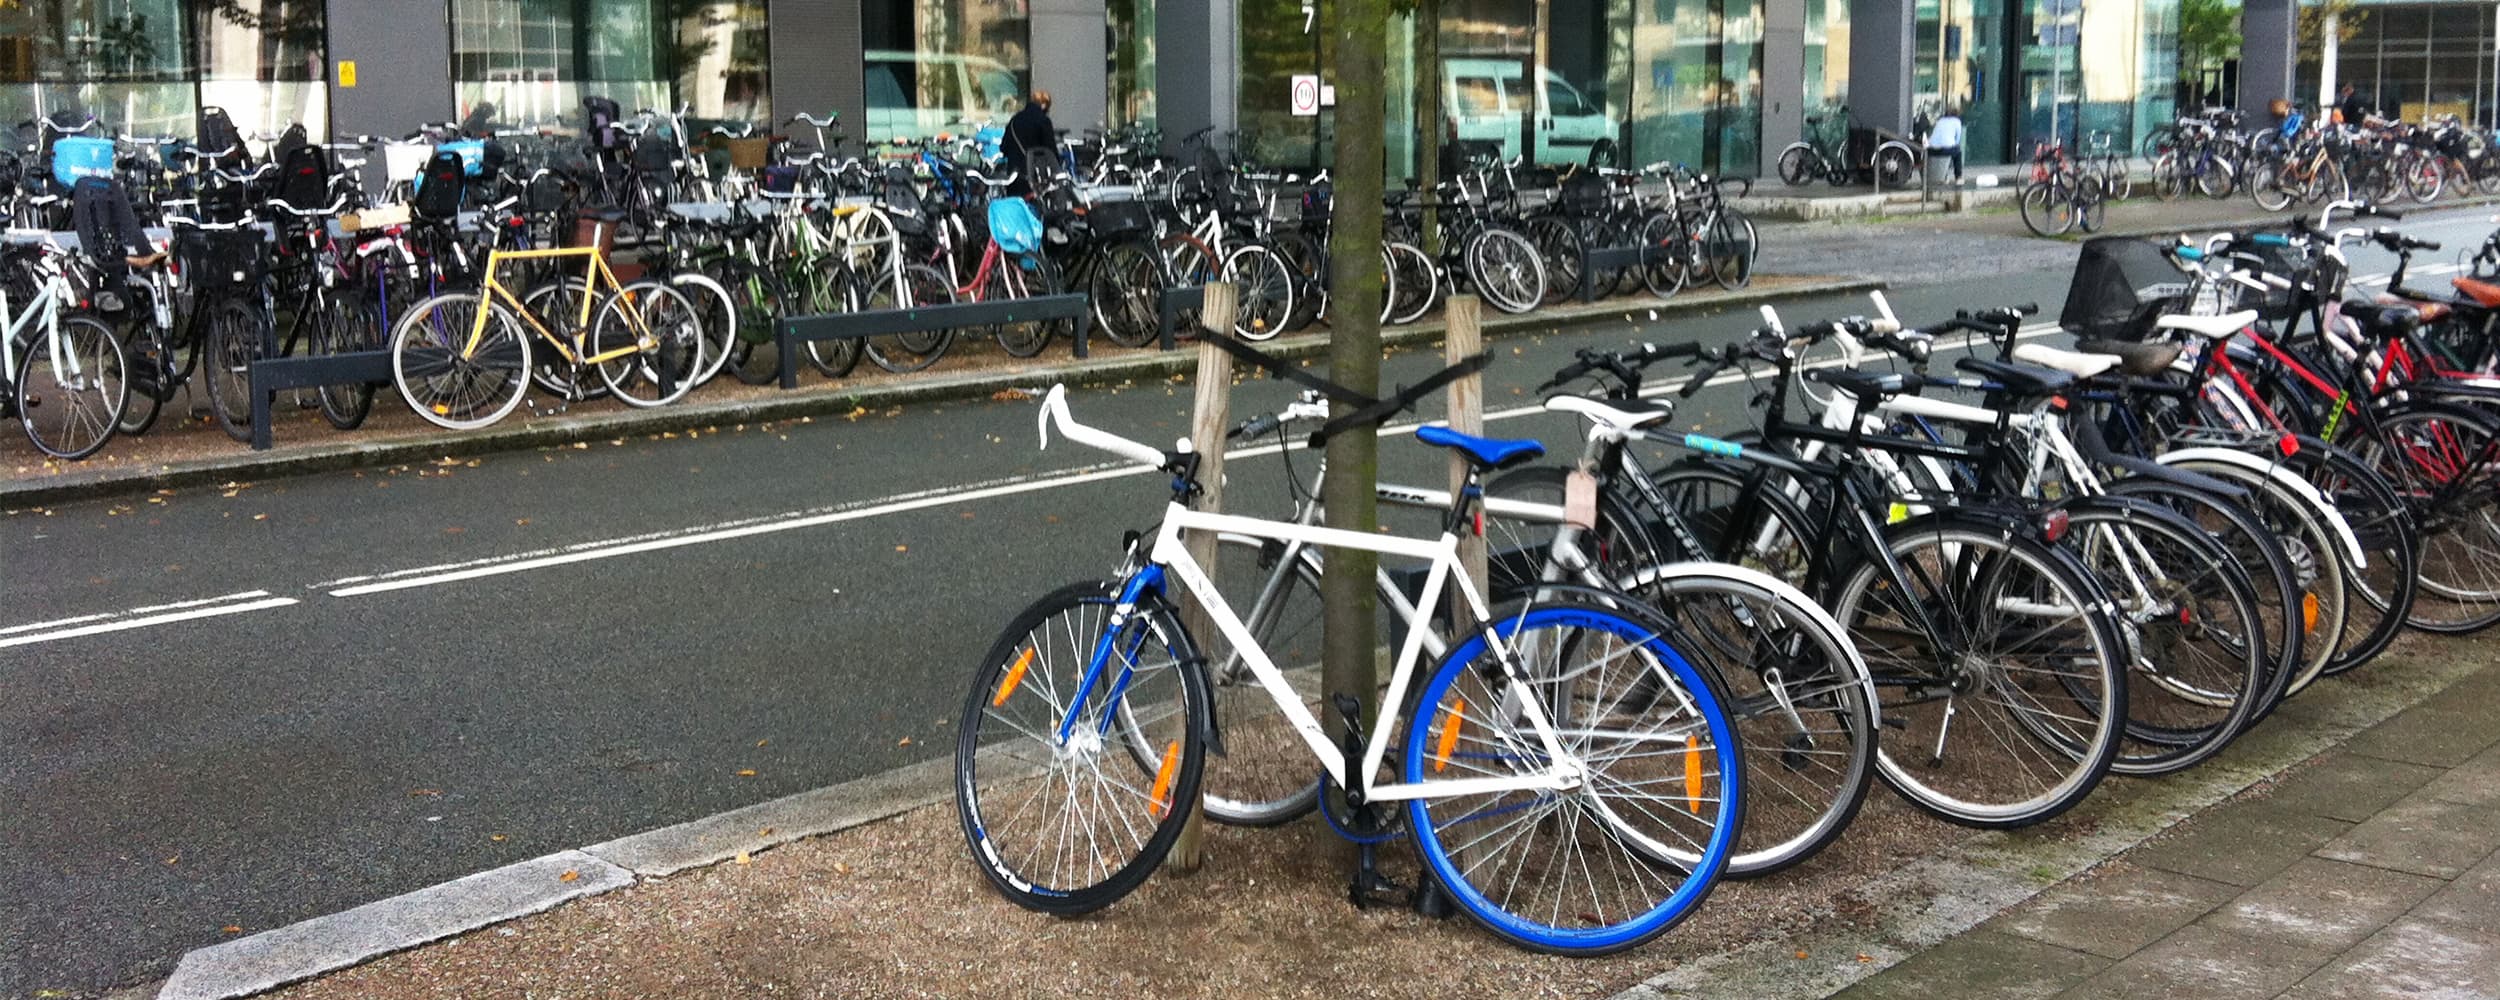 Cykelkaos på Kaj Munks Vej i Ørestad Nord. Ørestads grundejerforeninger rydder i februar og marts 2023 op og fjerne efterladte cykler. Cykeloprydningen bliver varslet 4-6 uger i forvejen med mærker på cyklerne.